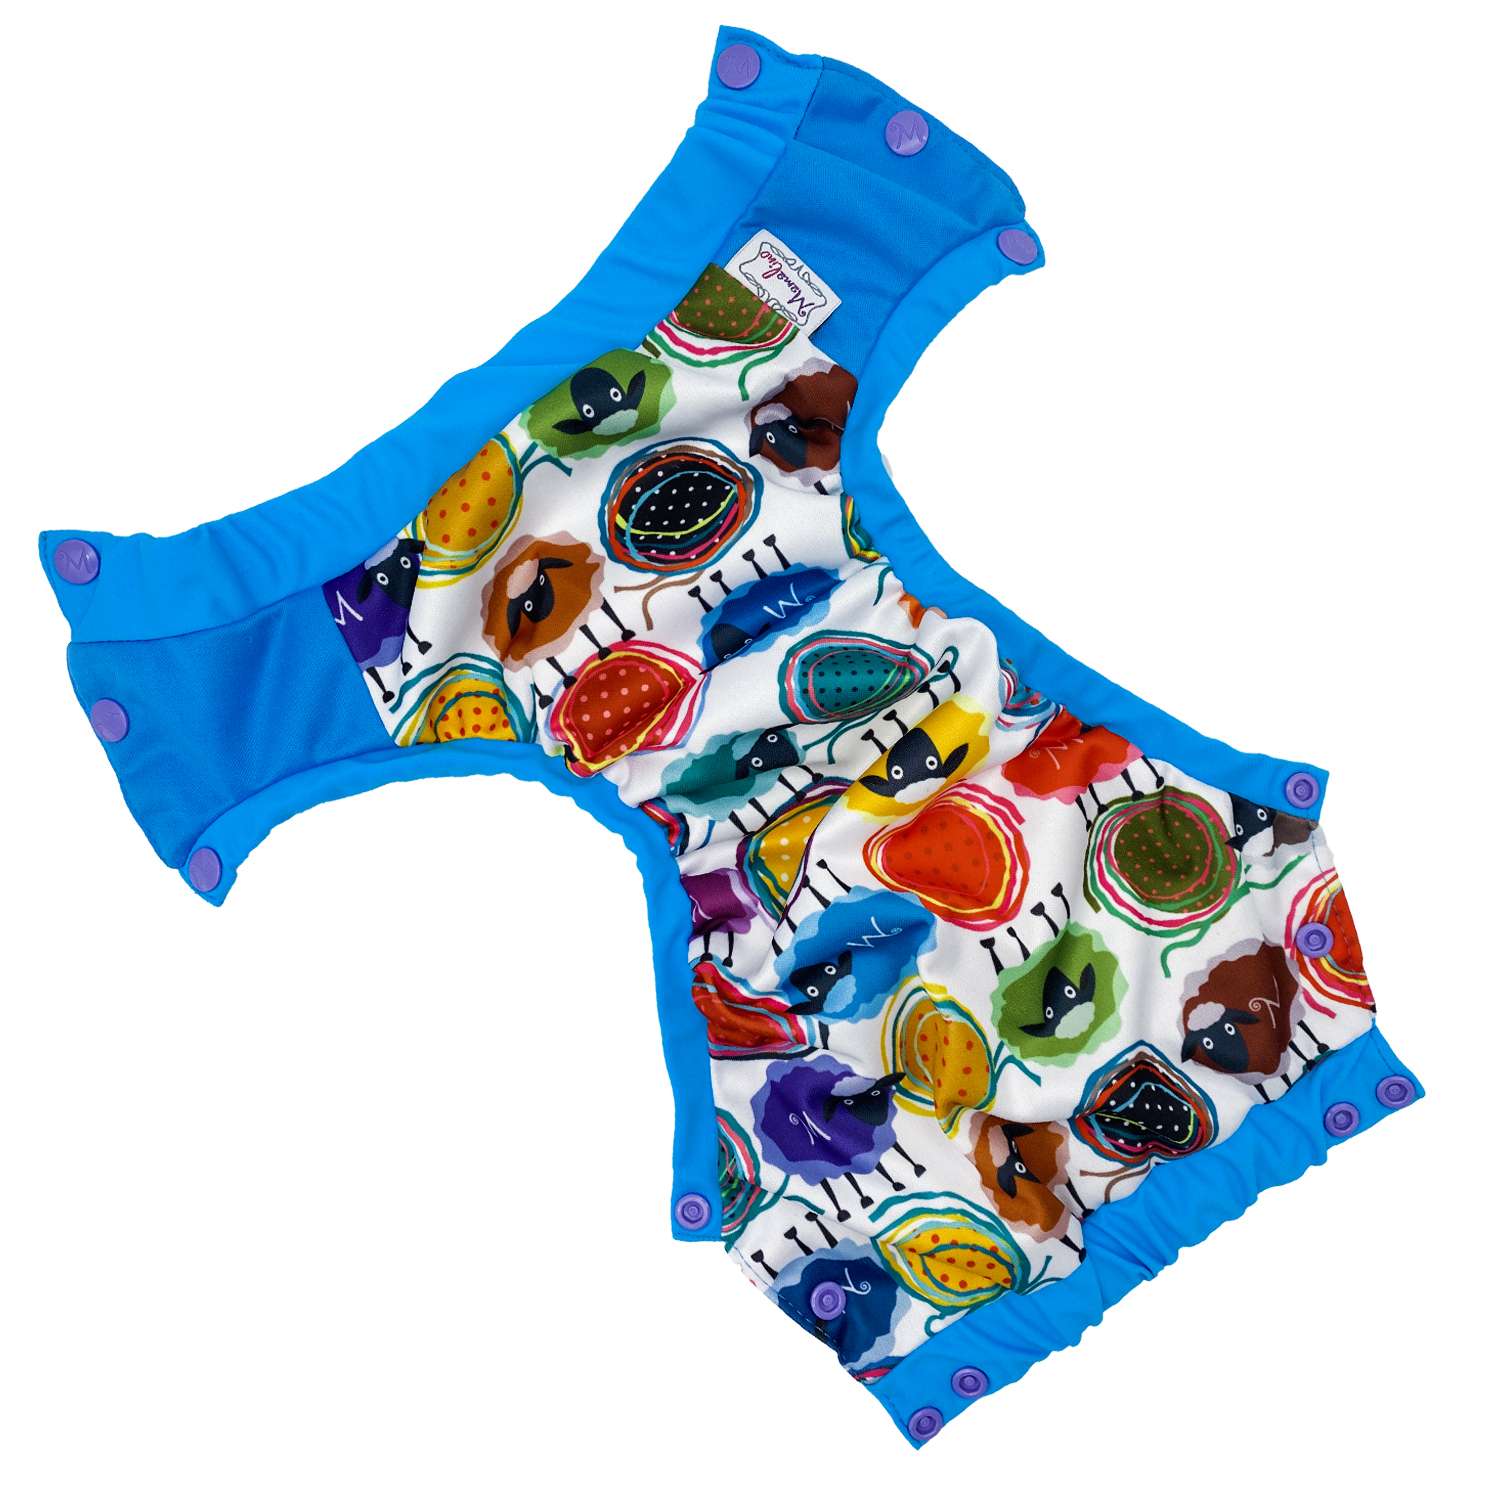 Трусики для плавания Mamalino многоразовые голубые с барашками размер L 10-18 кг - фото 2